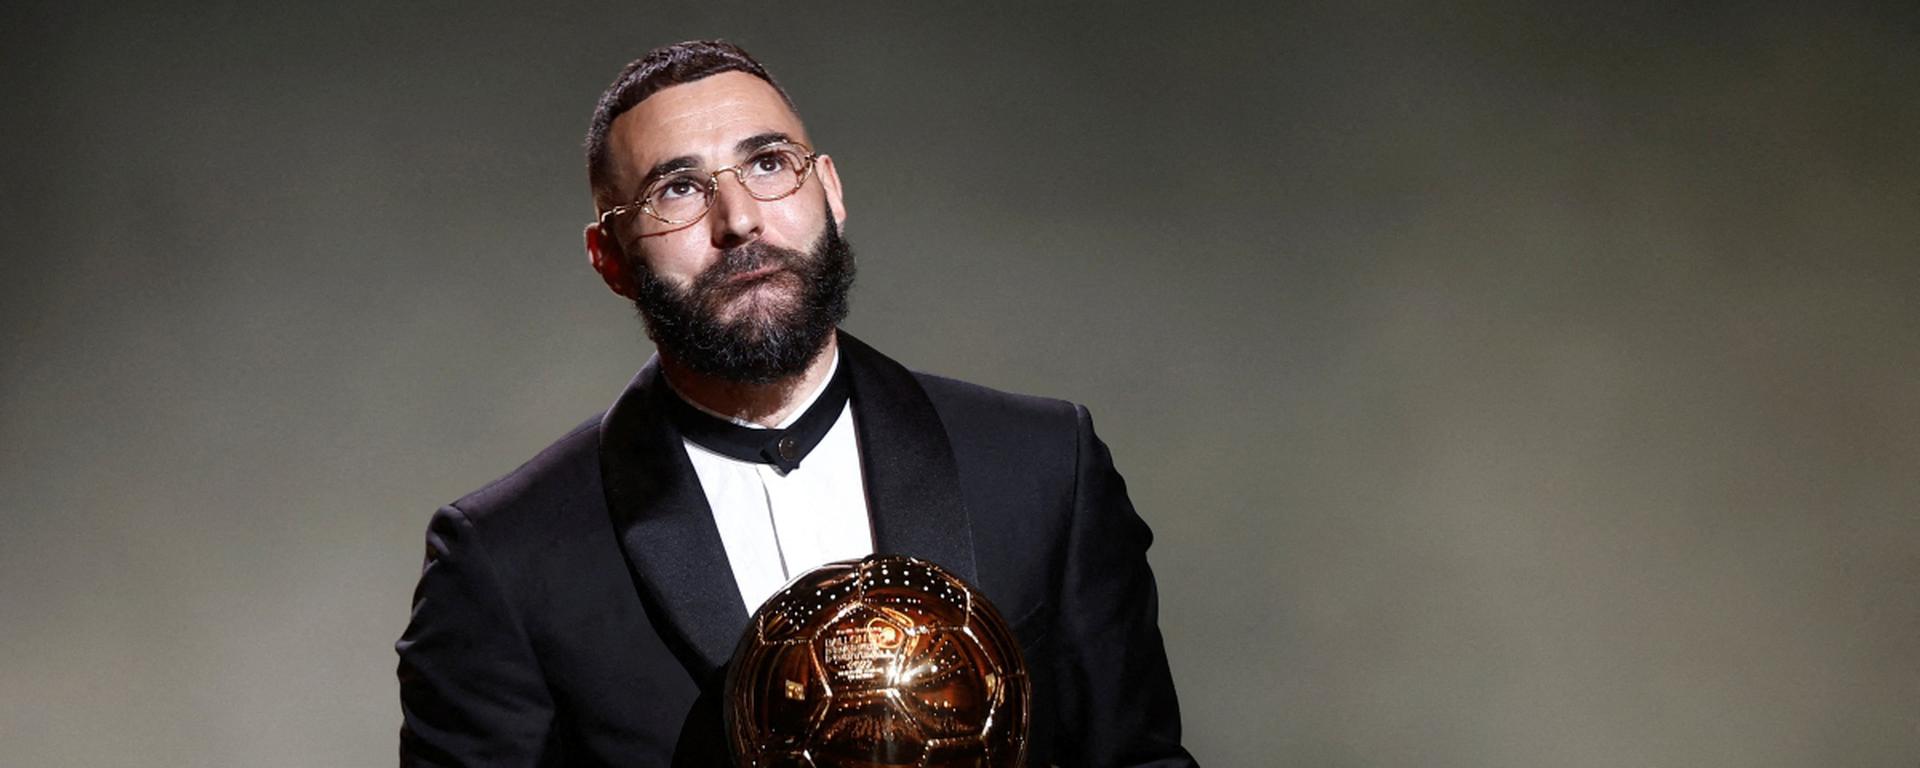 Karim Benzema: 20 frases de cracks que retratan al nuevo Balón de Oro